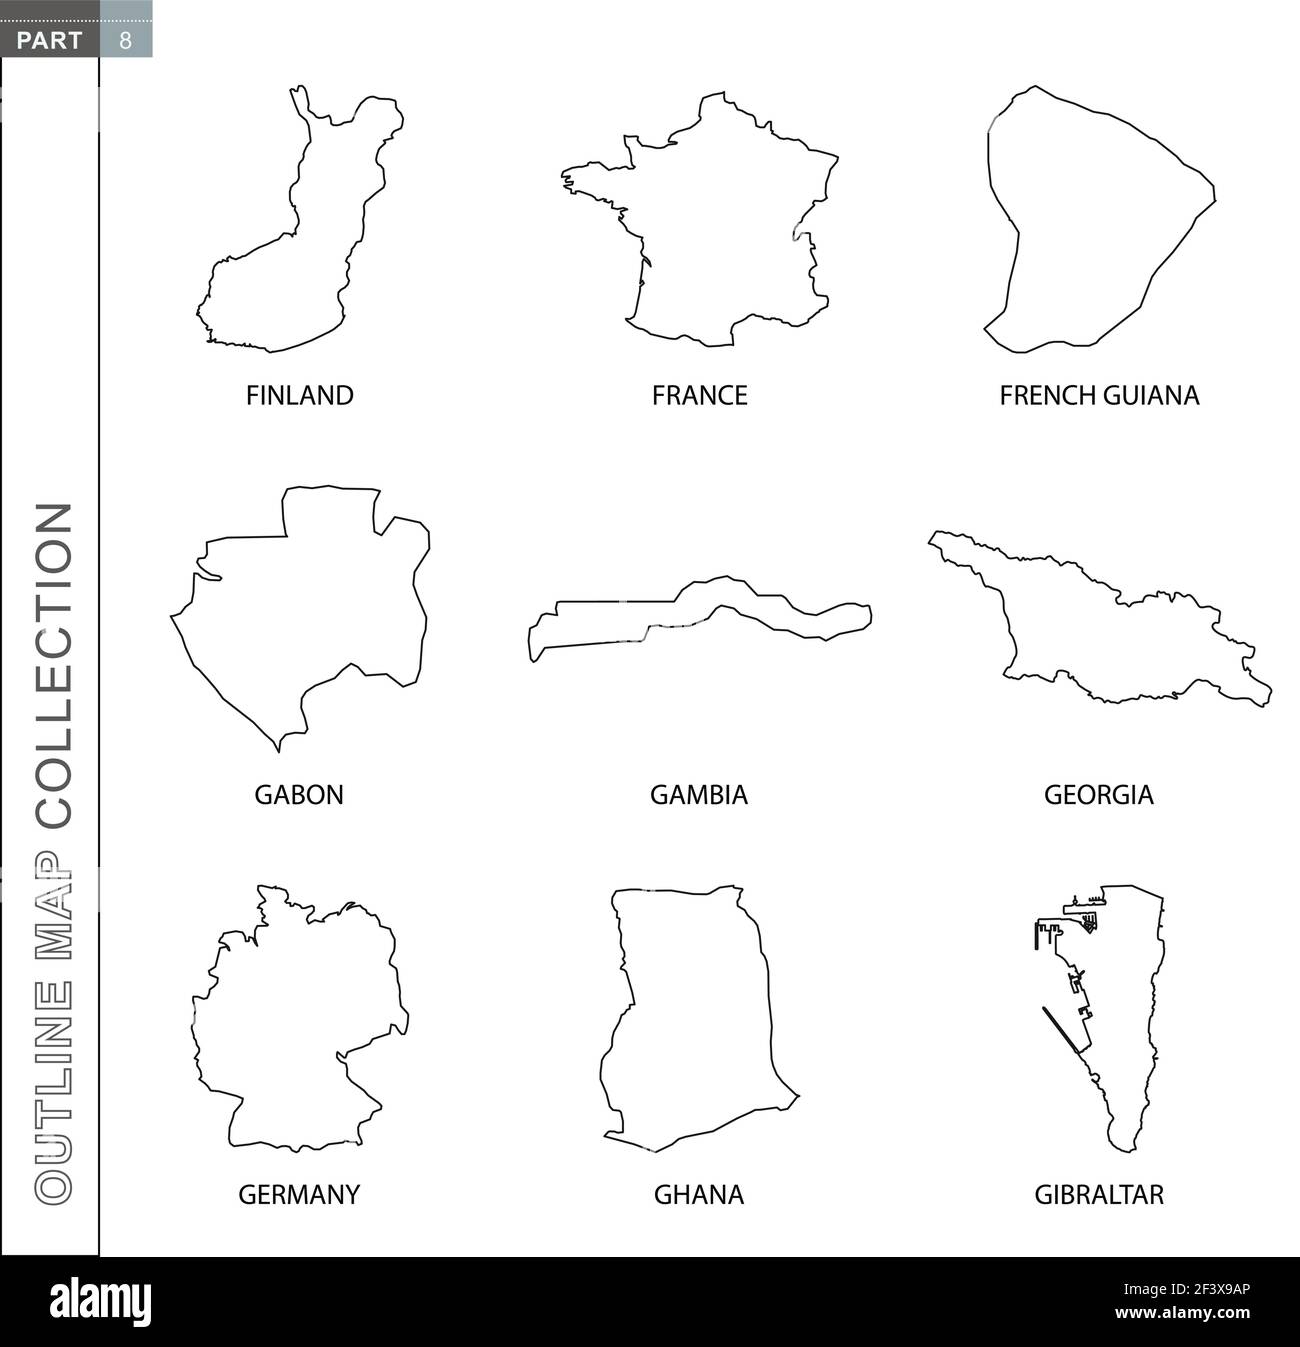 Übersicht Karten Sammlung, neun schwarz linierte Vektor-Karte von Finnland, Frankreich, Französisch Guayana, Gabun, Gambia, Georgien, Deutschland, Ghana, Gibraltar Stock Vektor